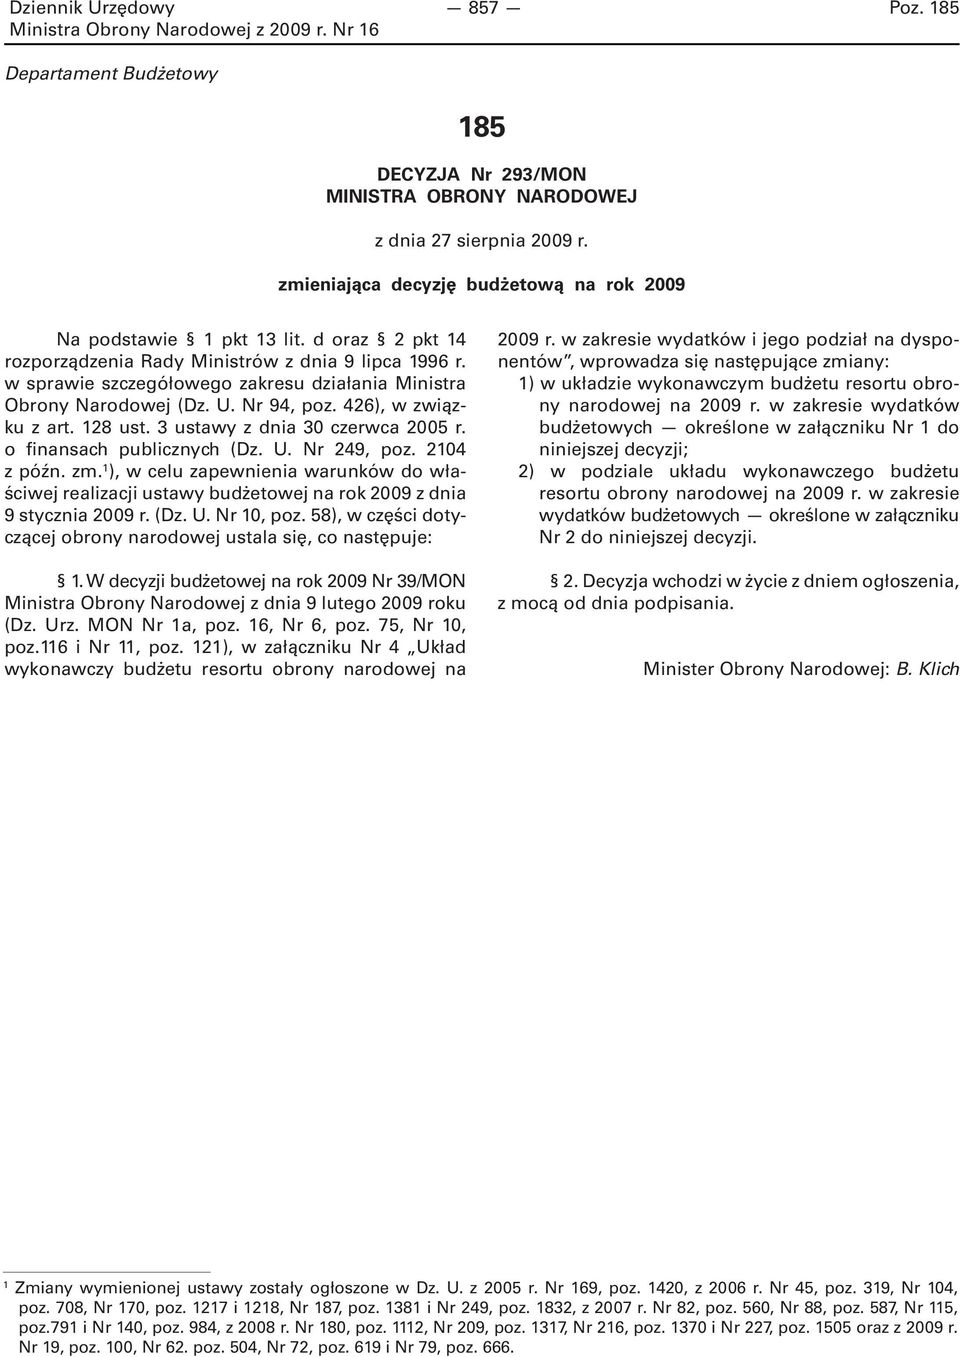 3 ustawy z dnia 30 czerwca 2005 r. o finansach publicznych (Dz. U. Nr 249, poz. 2104 z późn. zm.